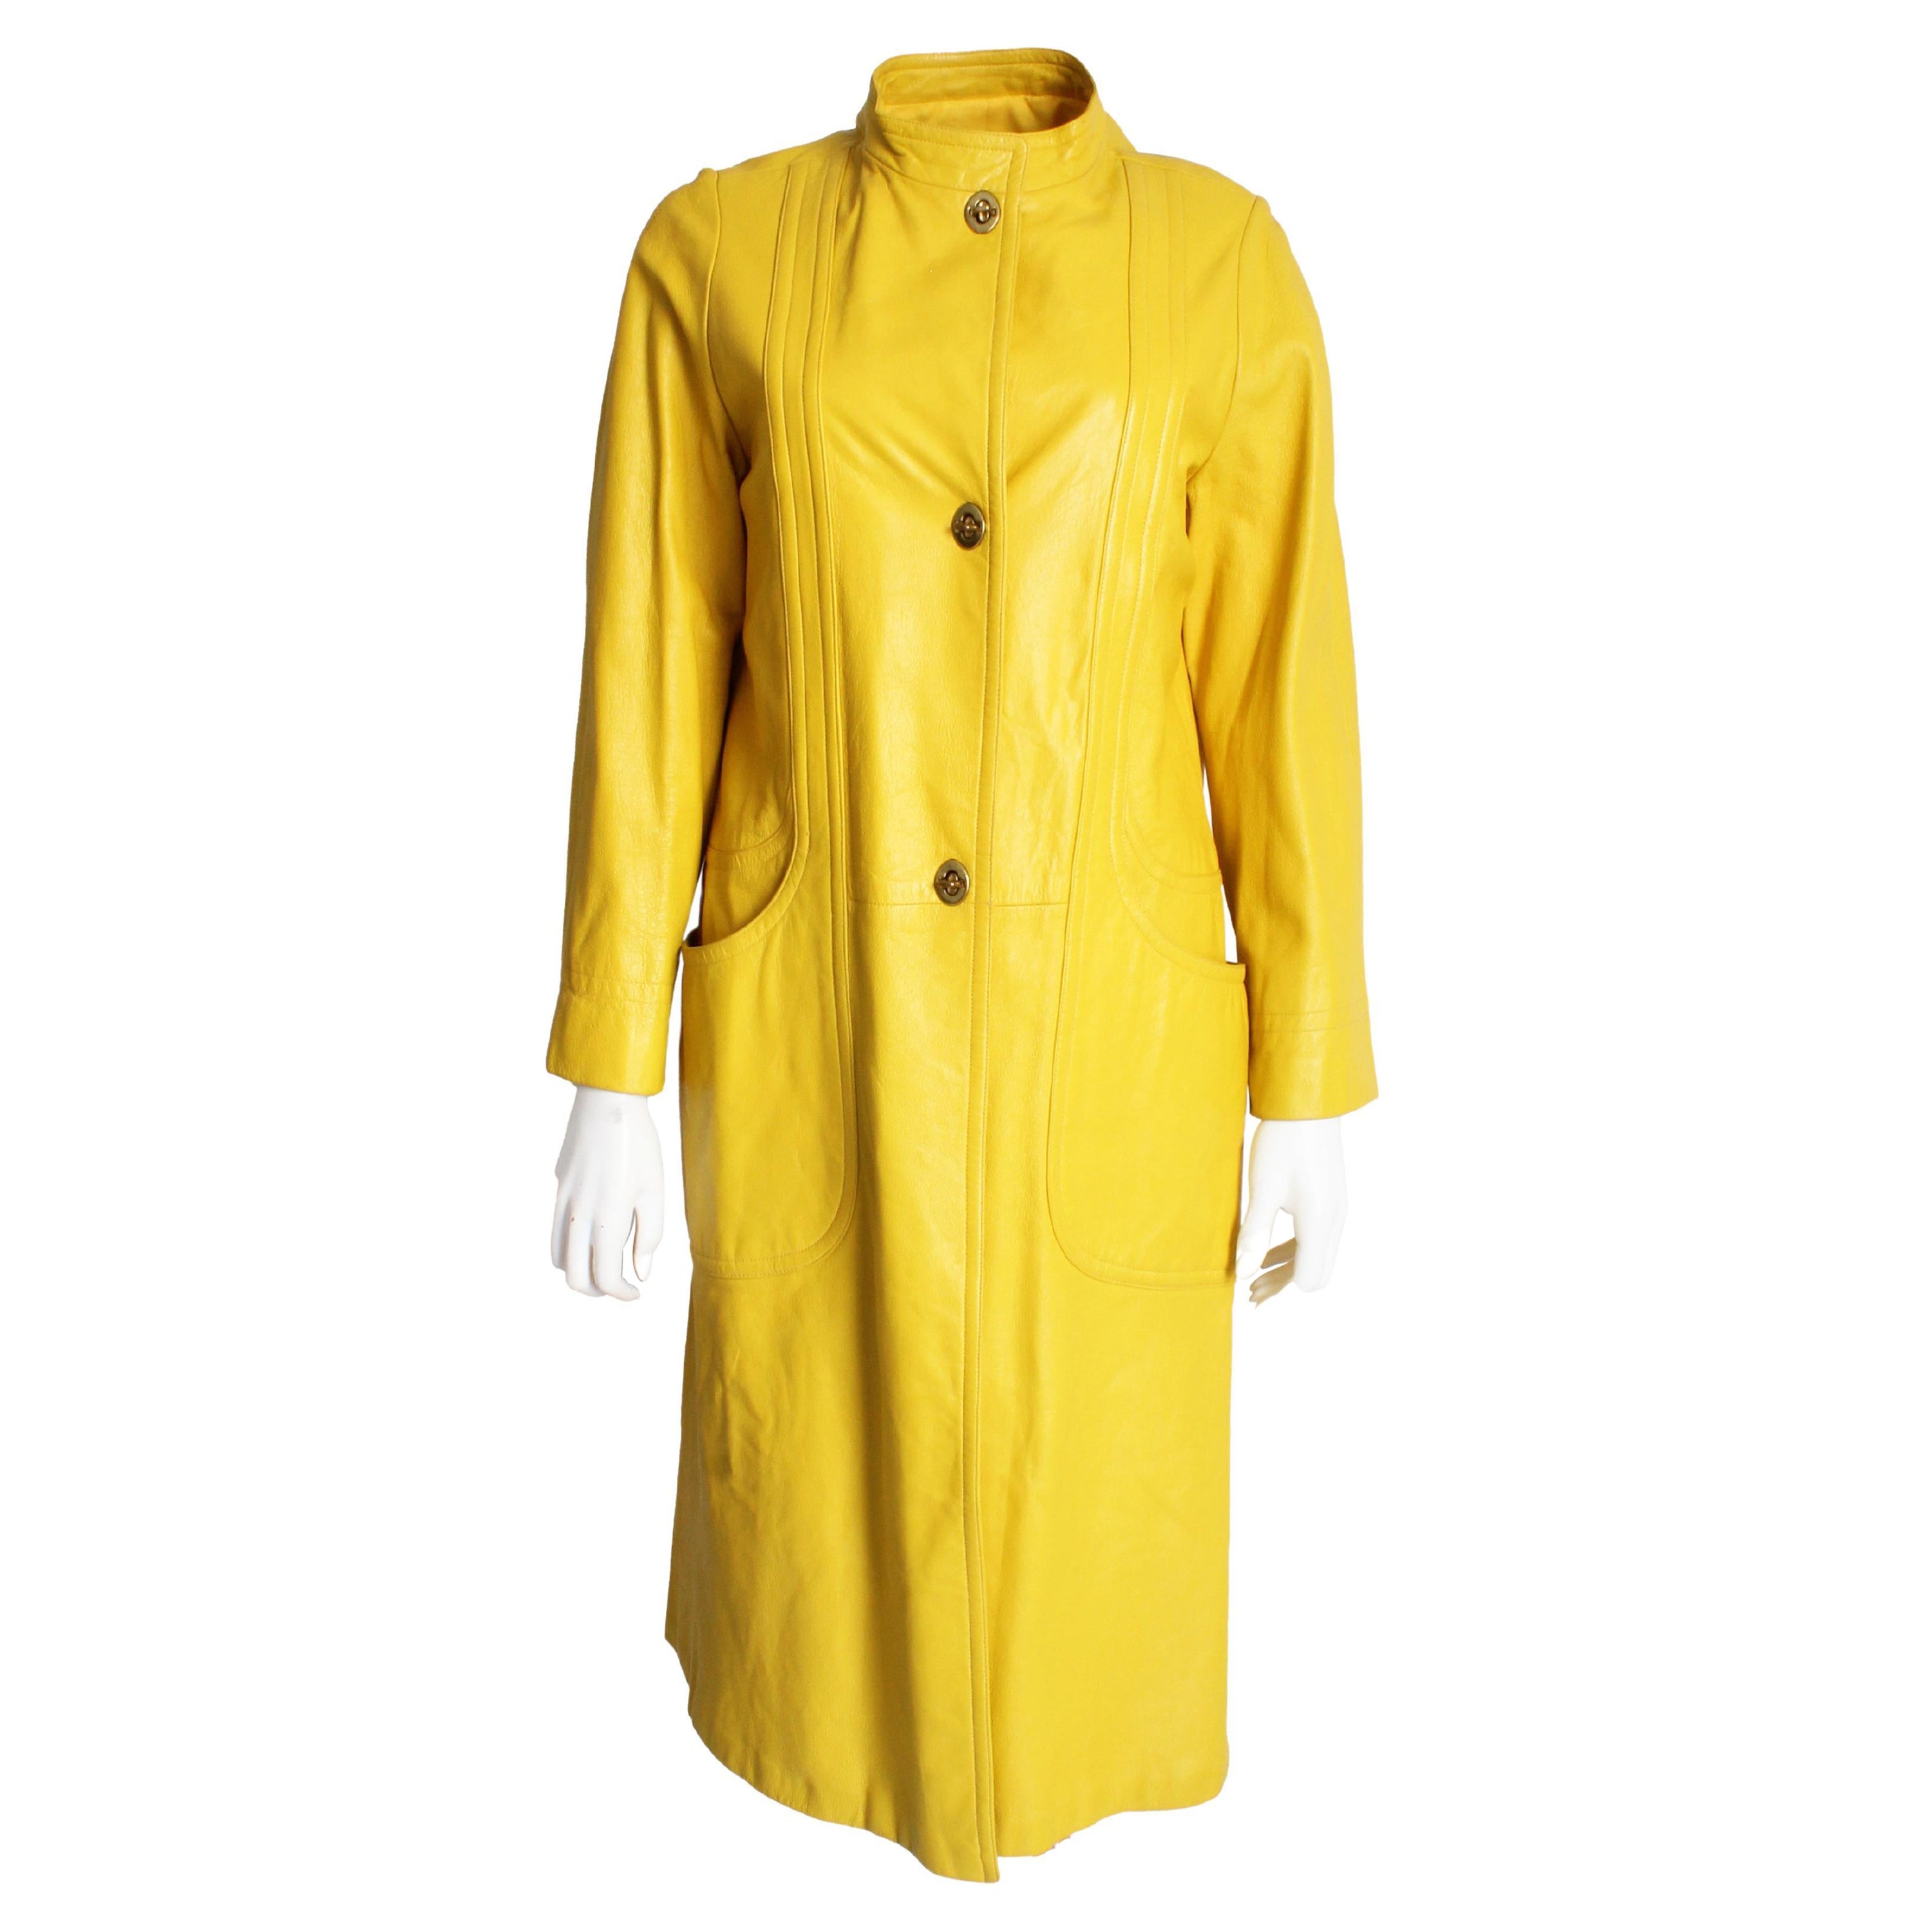 Bonnie Cashin for Sills - Manteau long en cuir jaune vif, vintage, années 60  en vente